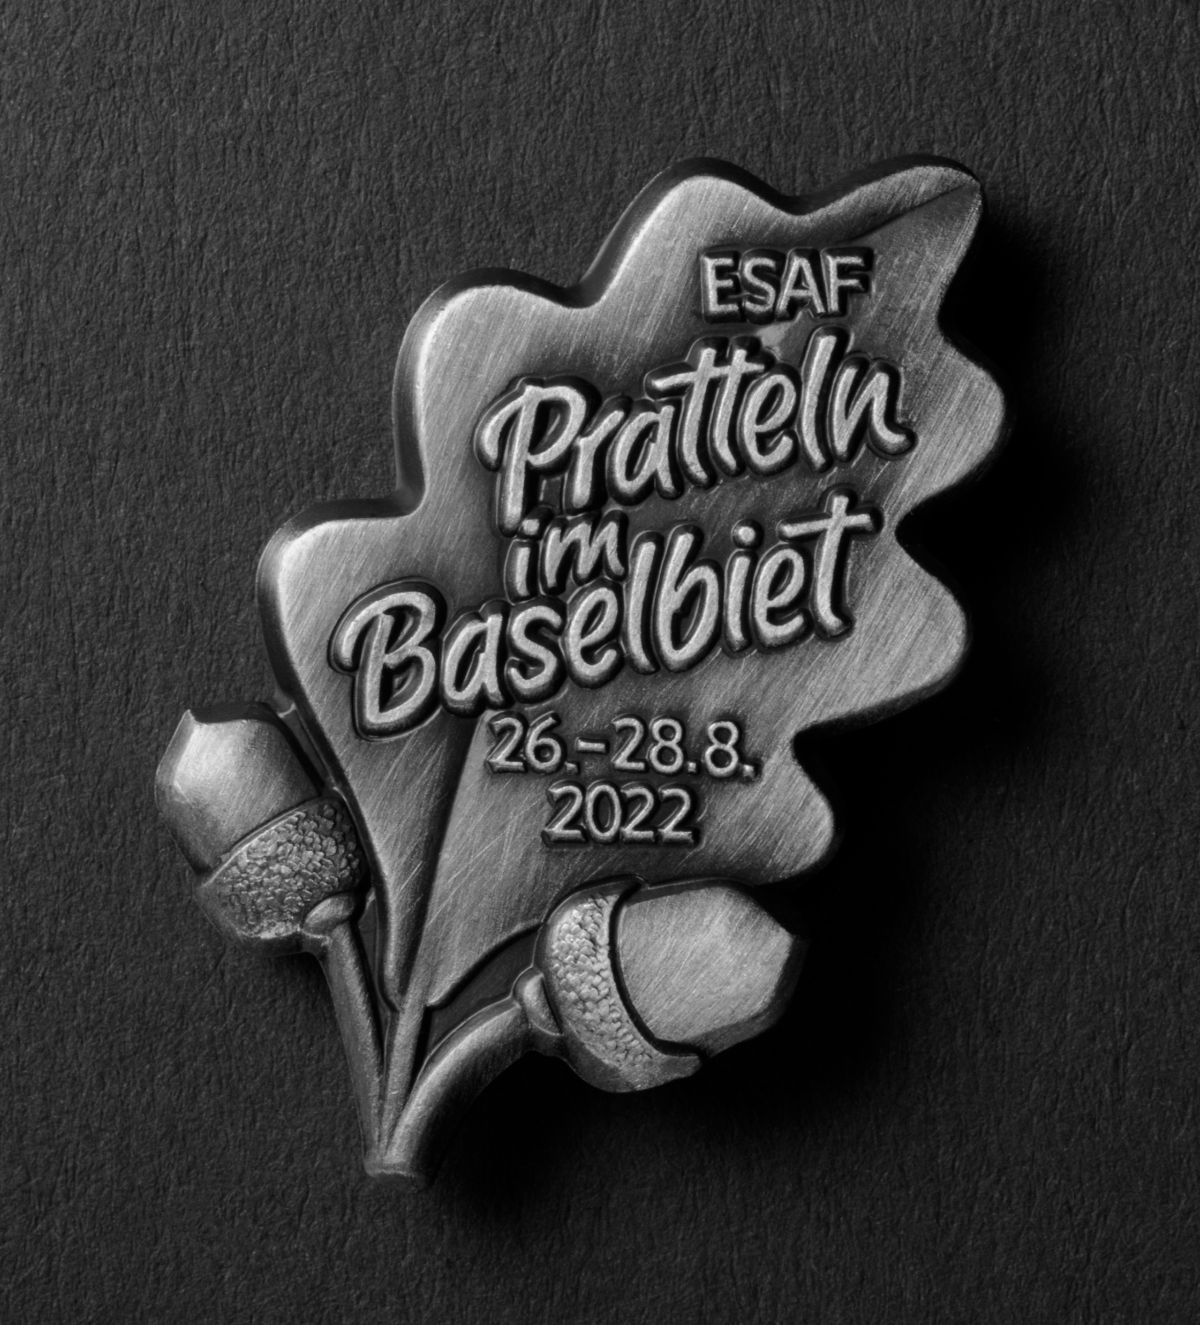 Insigne de la fête | Eidgenössisches Schwing- und Älplerfest Pratteln im Baselbiet | ESAF 2022